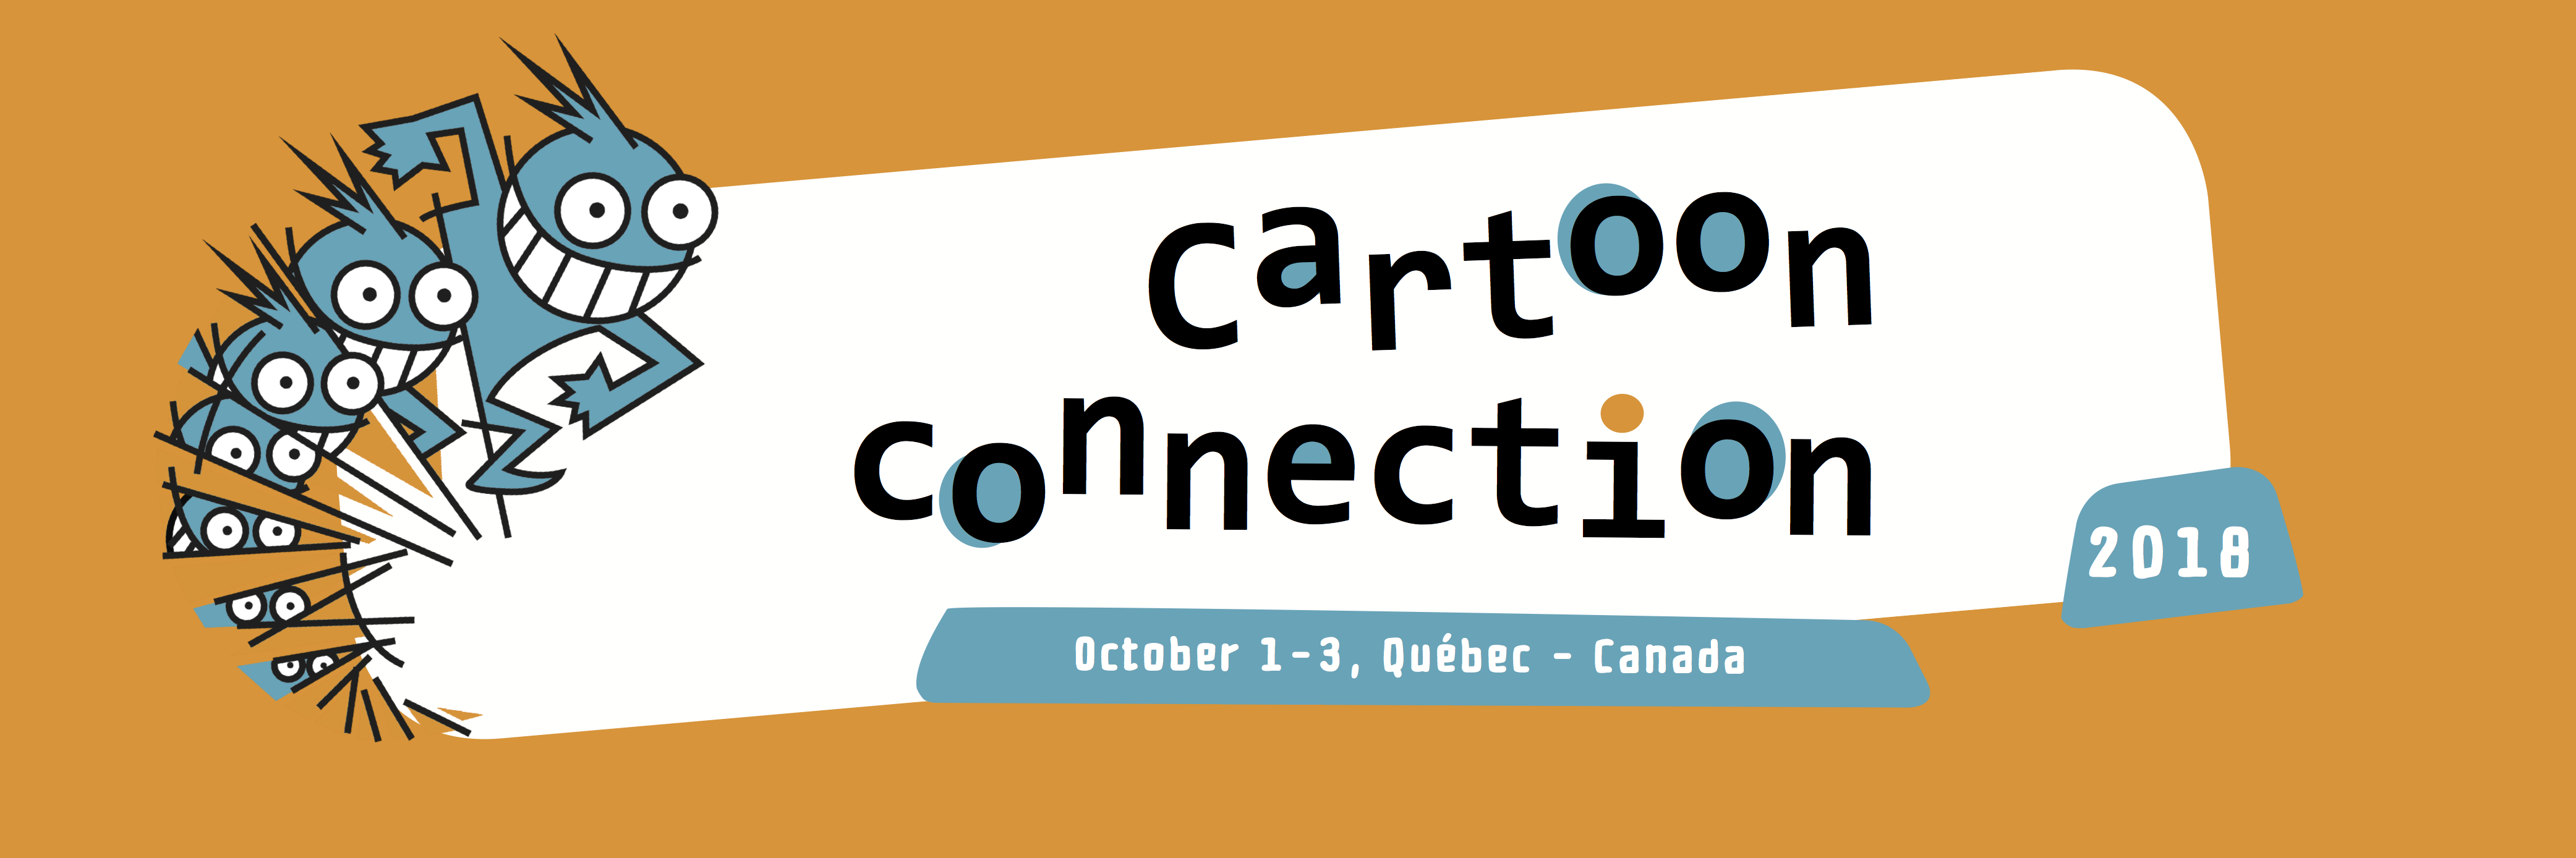 Cartoon Connection 2018 - logo